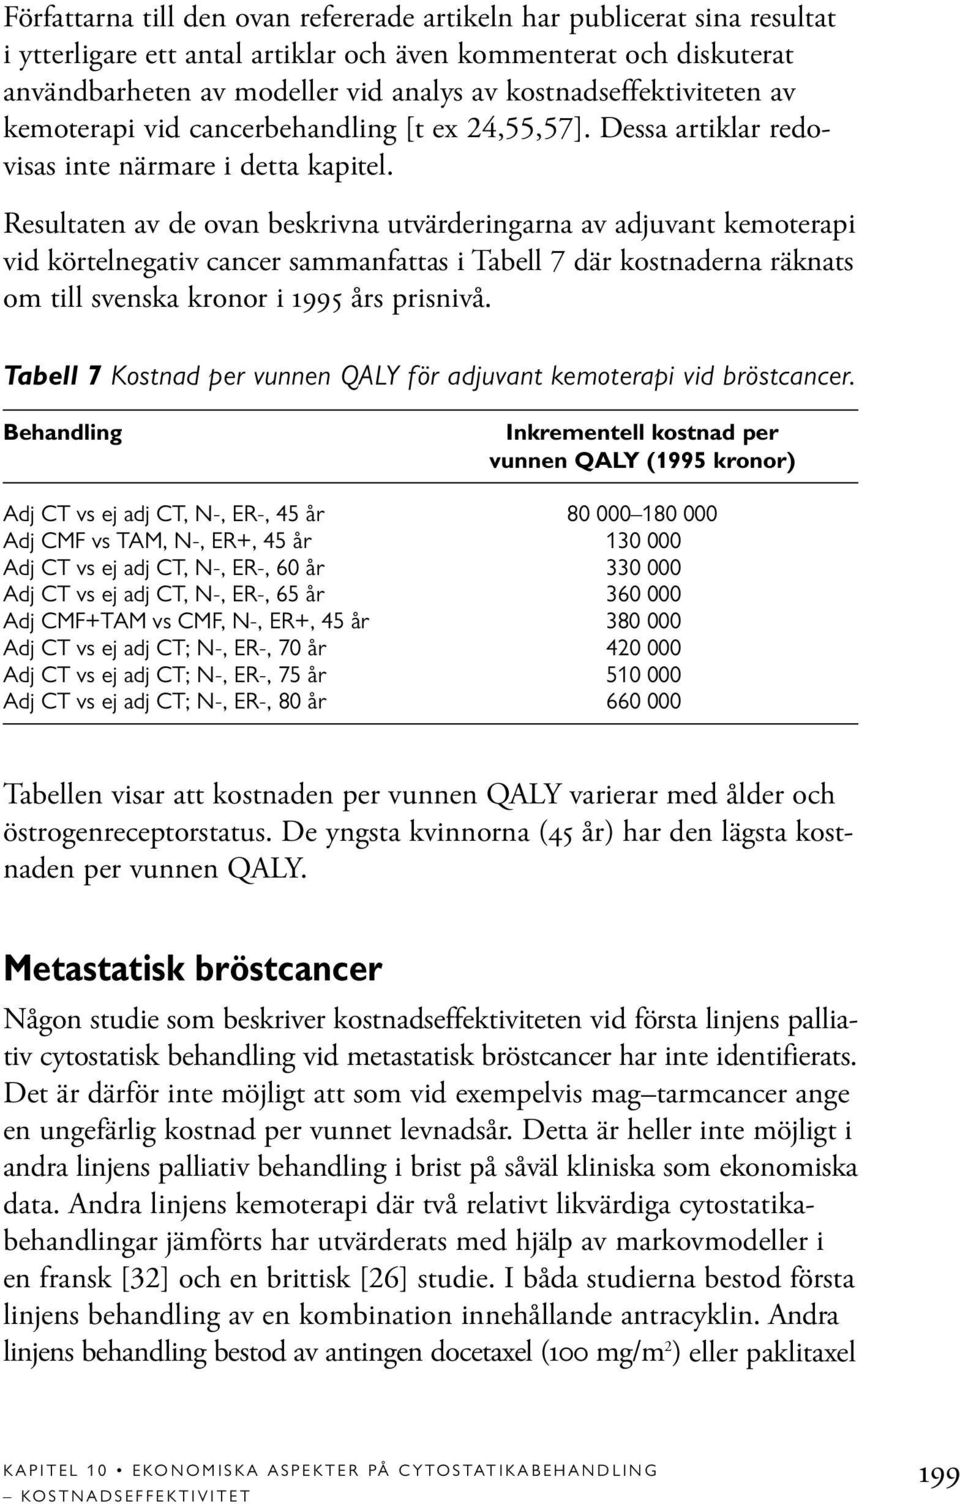 Resultaten av de ovan beskrivna utvärderingarna av adjuvant kemoterapi vid körtelnegativ cancer sammanfattas i Tabell 7 där kostnaderna räknats om till svenska kronor i 1995 års prisnivå.